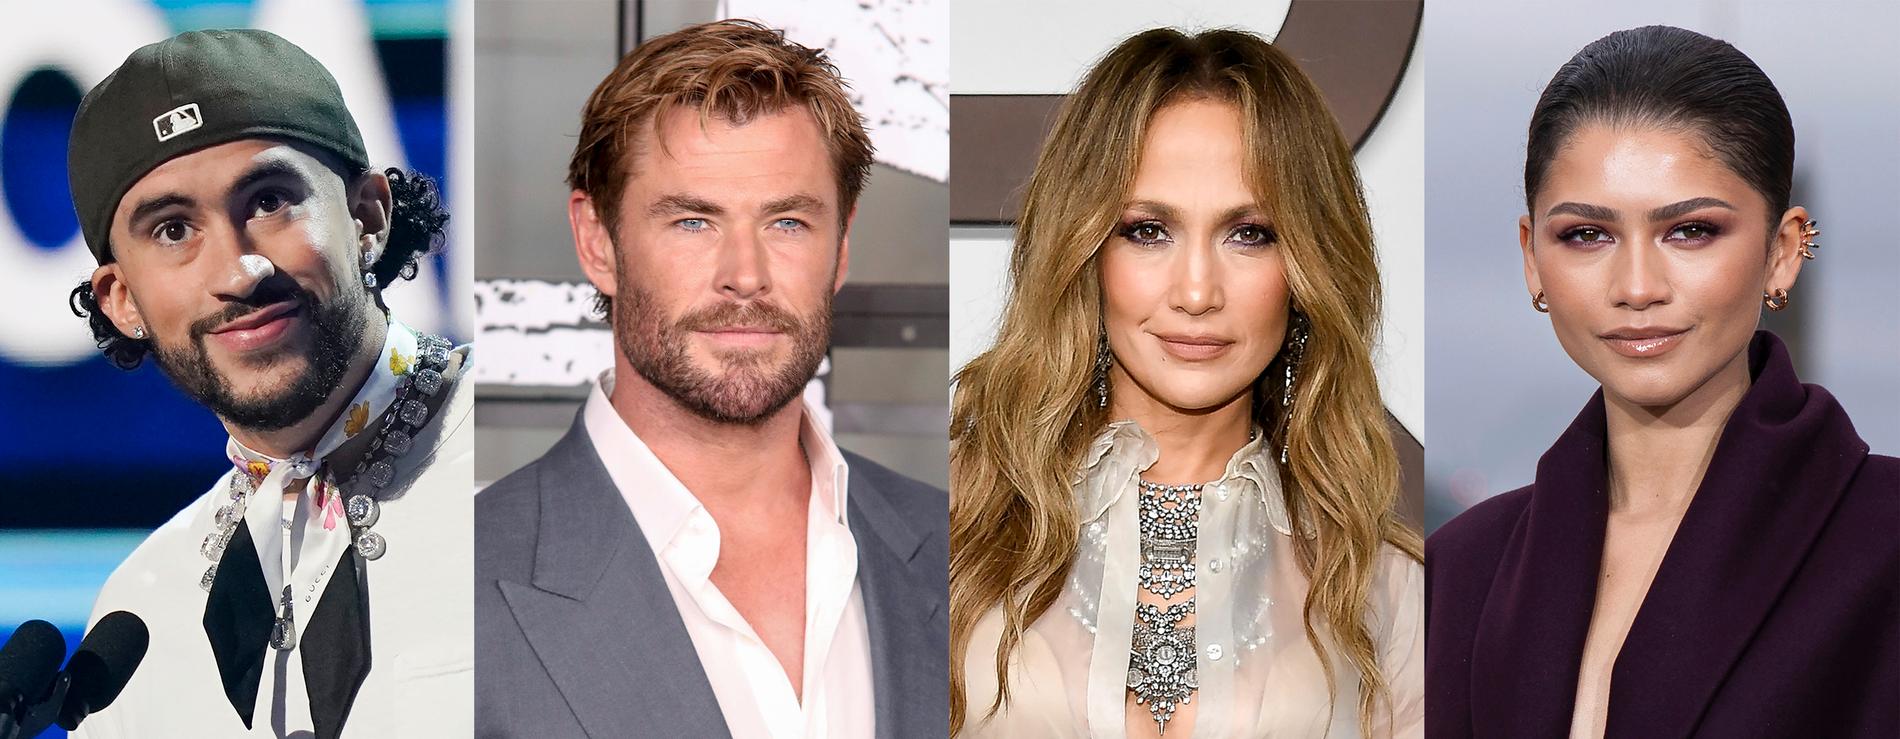 Årets värdar för Met-galan är Bad Bunny, Chris Hemsworth, Jennifer Lopez och Zendaya.